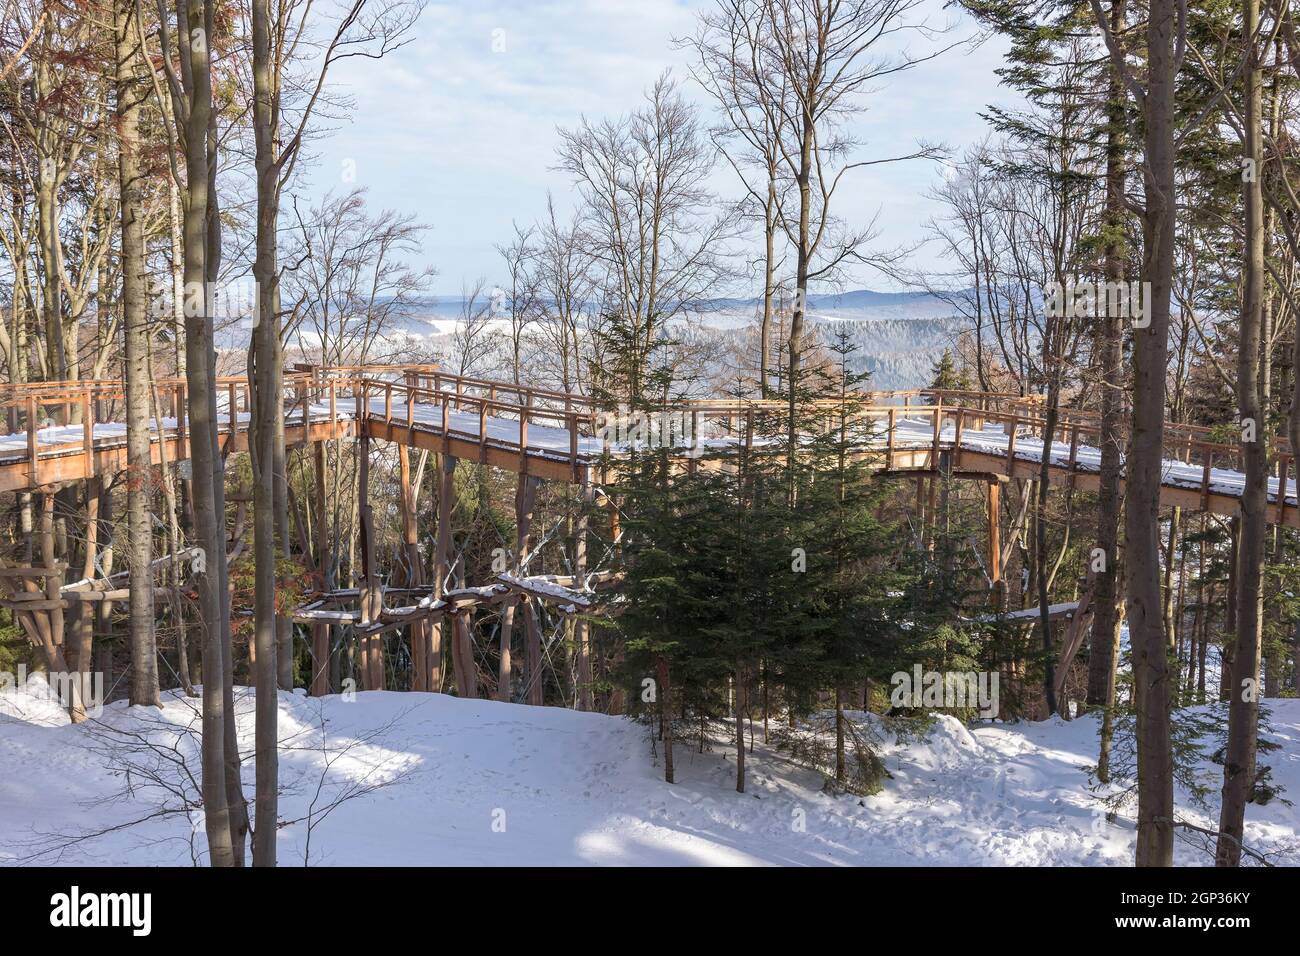 Der Holzweg des Aussichtsturms der Baumkrone beherbergt die Bäume der Skistation Slotwiny Arena in Krynica Zdroj, Polen Stockfoto